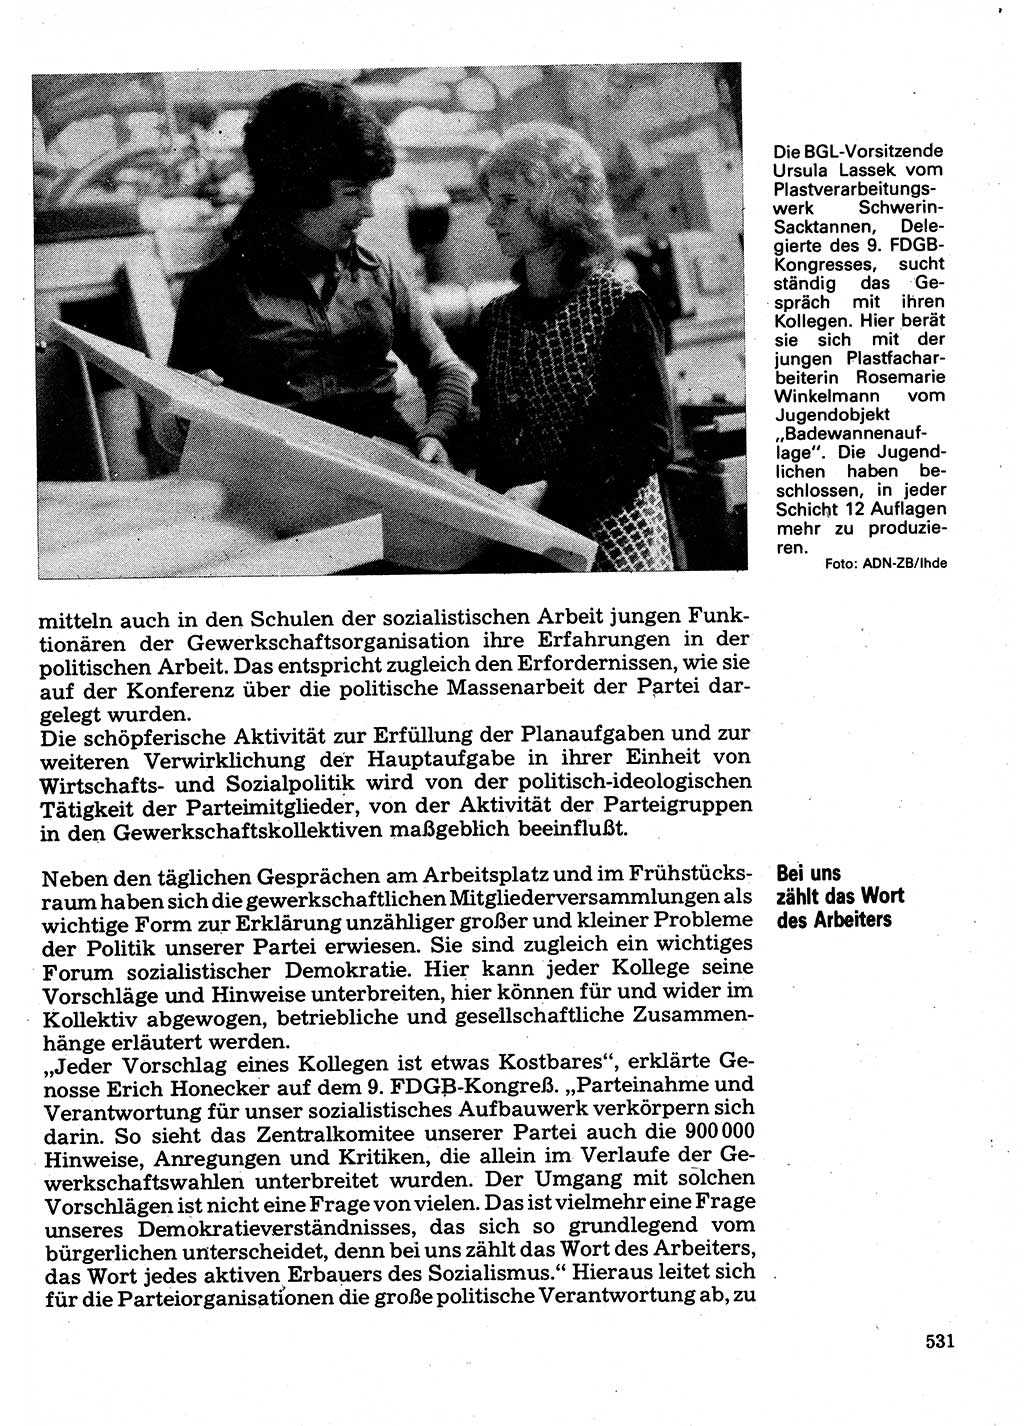 Neuer Weg (NW), Organ des Zentralkomitees (ZK) der SED (Sozialistische Einheitspartei Deutschlands) für Fragen des Parteilebens, 32. Jahrgang [Deutsche Demokratische Republik (DDR)] 1977, Seite 531 (NW ZK SED DDR 1977, S. 531)